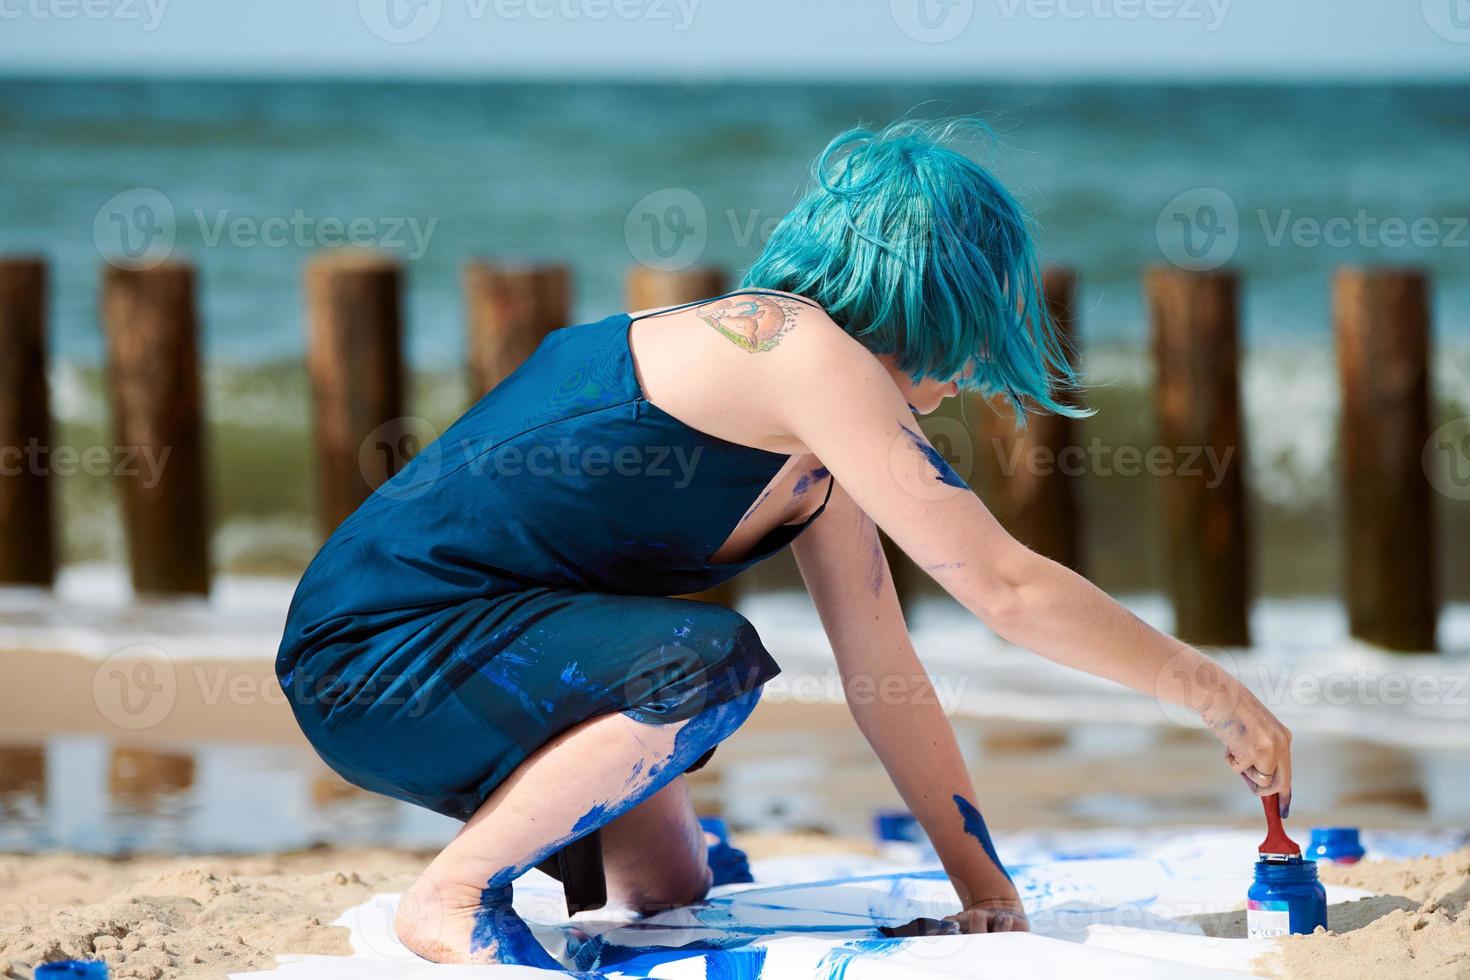 talentueuse femme aux cheveux bleus, artiste de performance enduite de peintures à la gouache sur une grande toile sur la plage photo